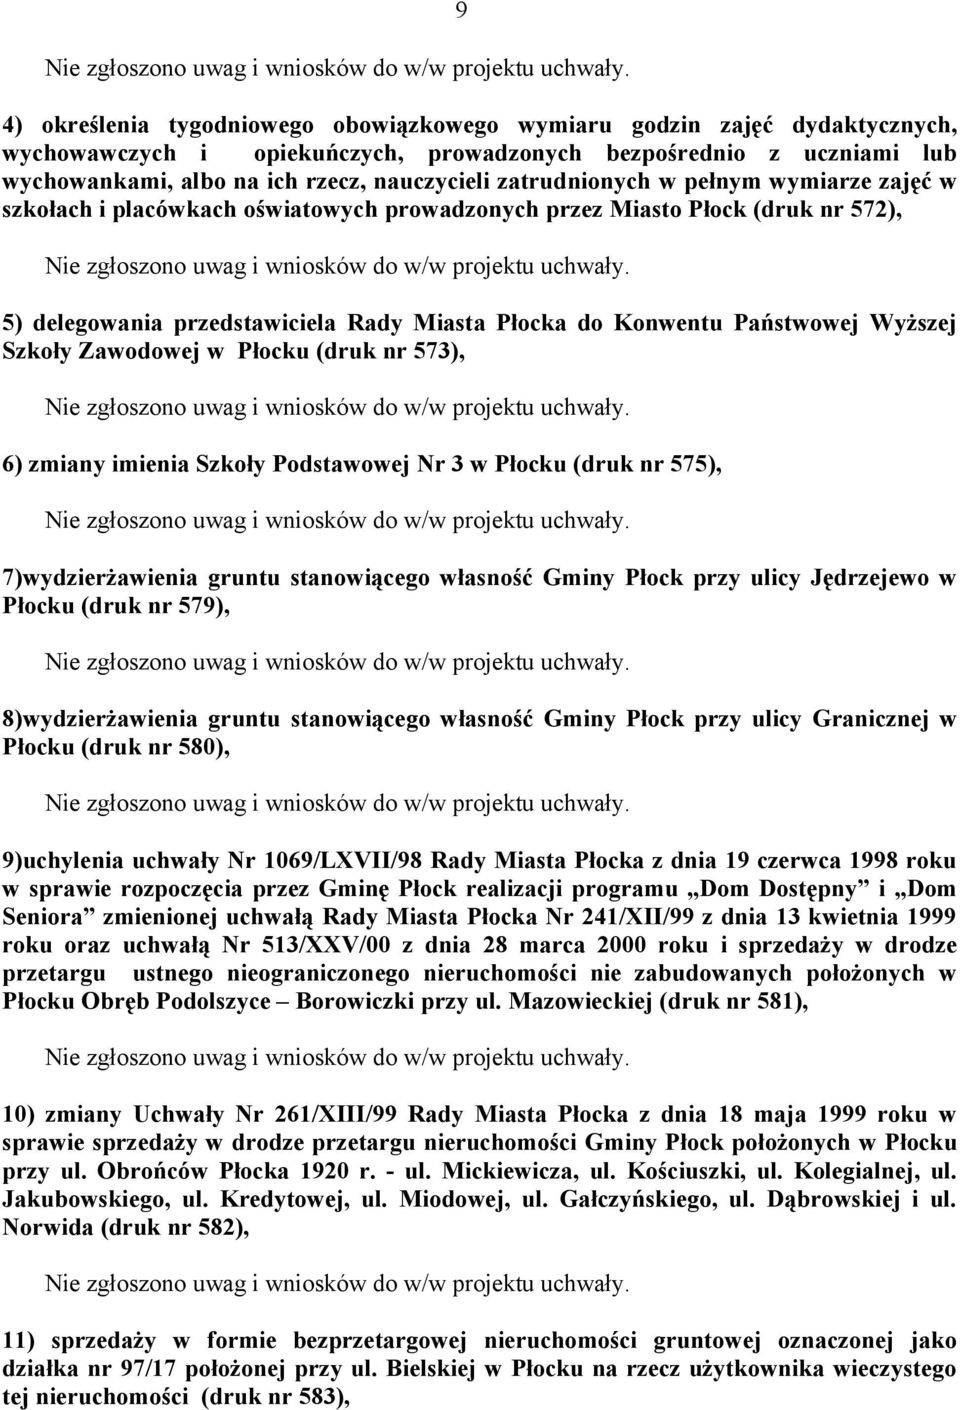 Wyższej Szkoły Zawodowej w Płocku (druk nr 573), 6) zmiany imienia Szkoły Podstawowej Nr 3 w Płocku (druk nr 575), 7)wydzierżawienia gruntu stanowiącego własność Gminy Płock przy ulicy Jędrzejewo w